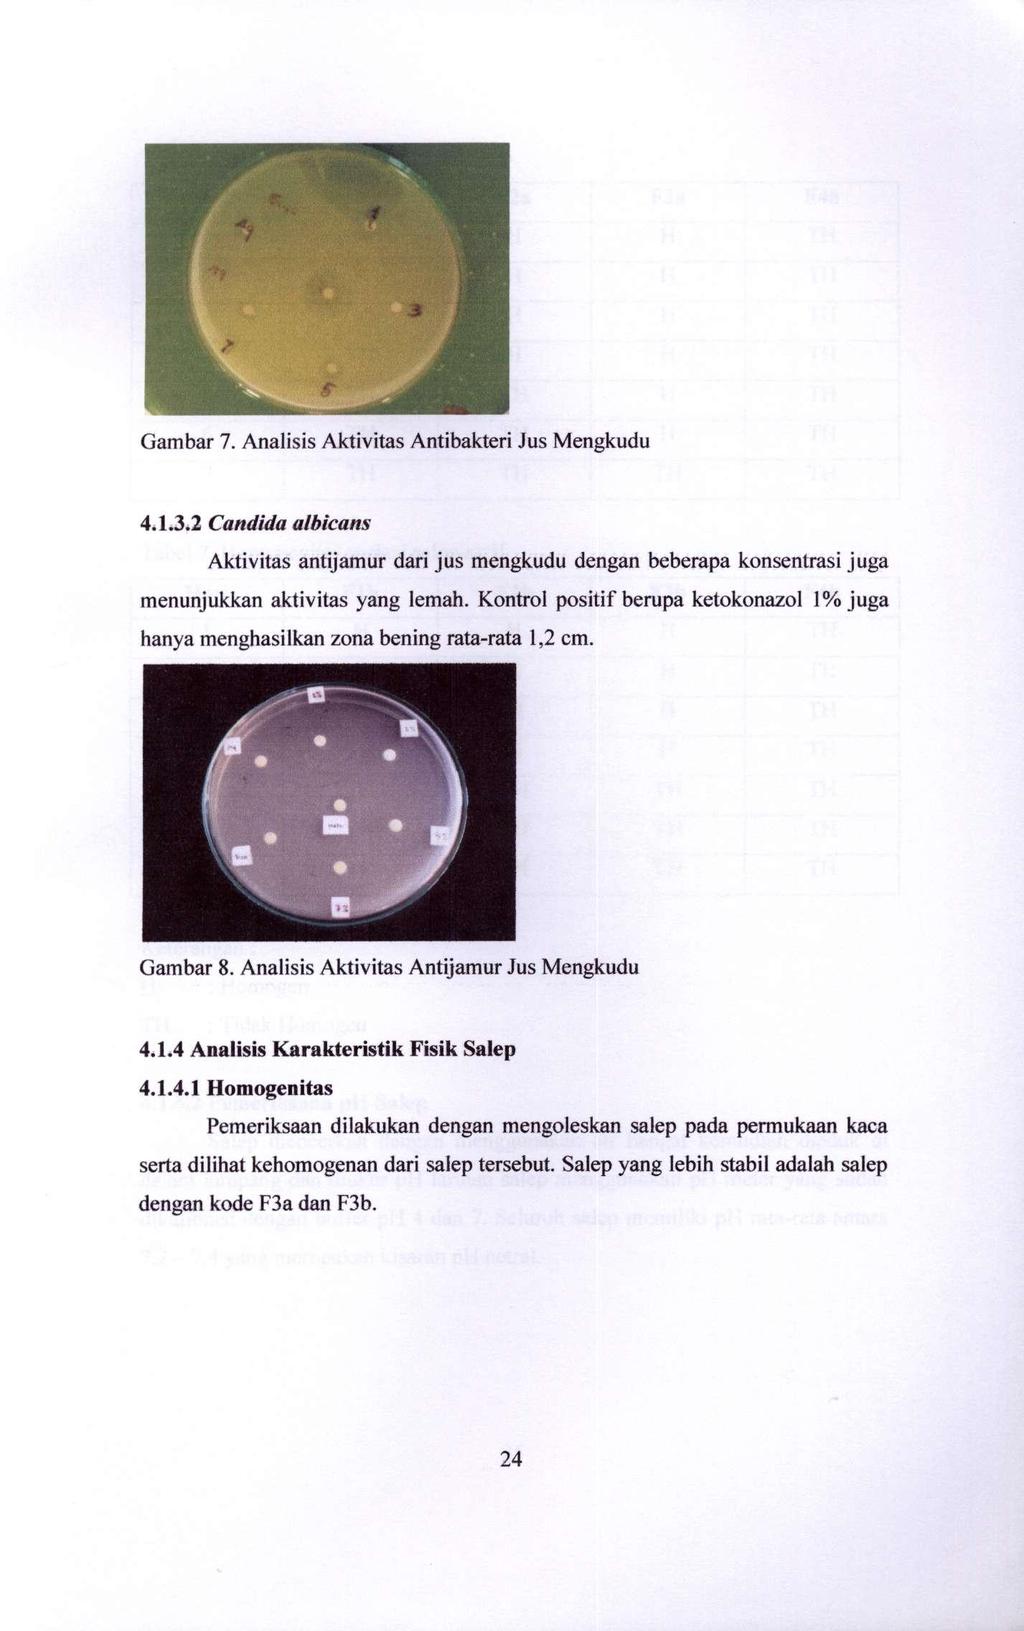 Gambar 7. Analisis Aktivitas Antibakteri Jus Mengkudu 4.1.3.2 Candida albicans Aktivitas antijamur dari jus mengkudu dengan beberapa konsentrasi juga menunjukkan aktivitas yang lemah.